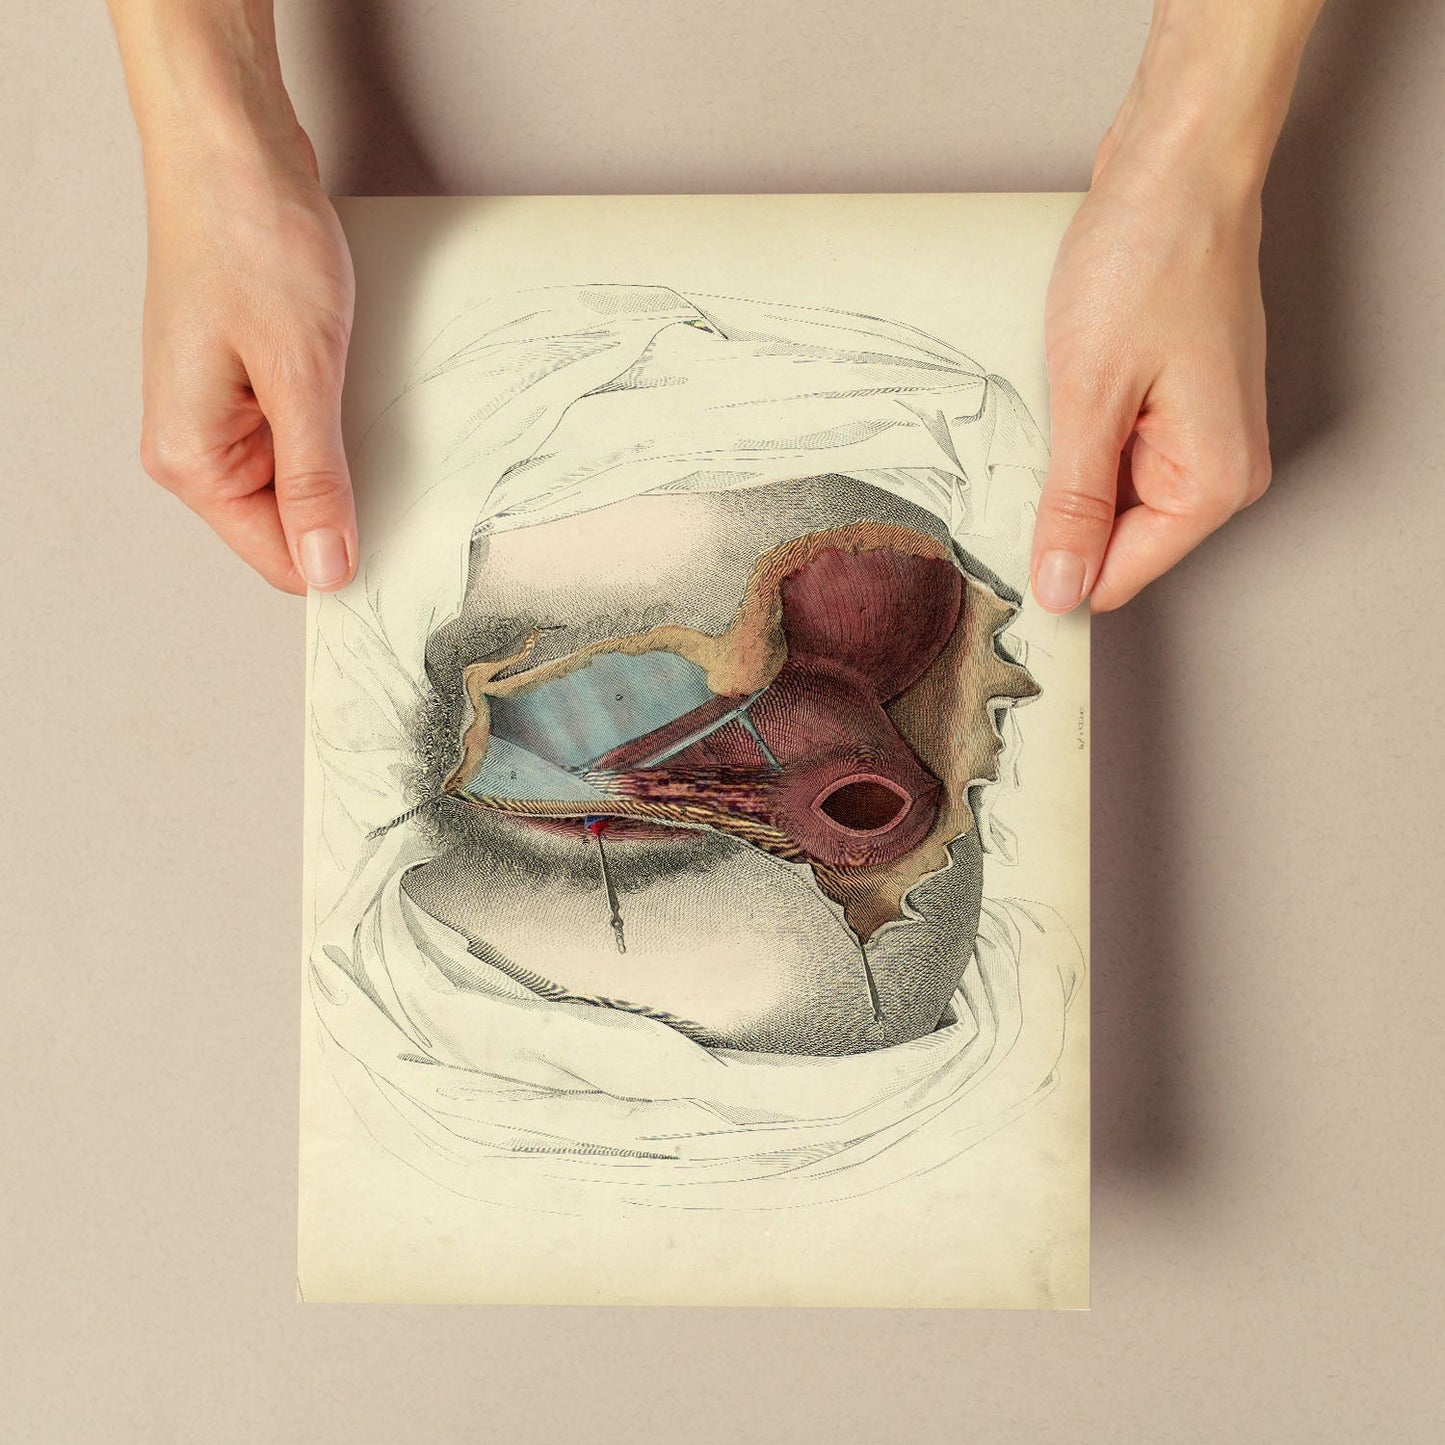 Dissection of the perineum, female-Artwork-Nacnic-Nacnic Estudio SL